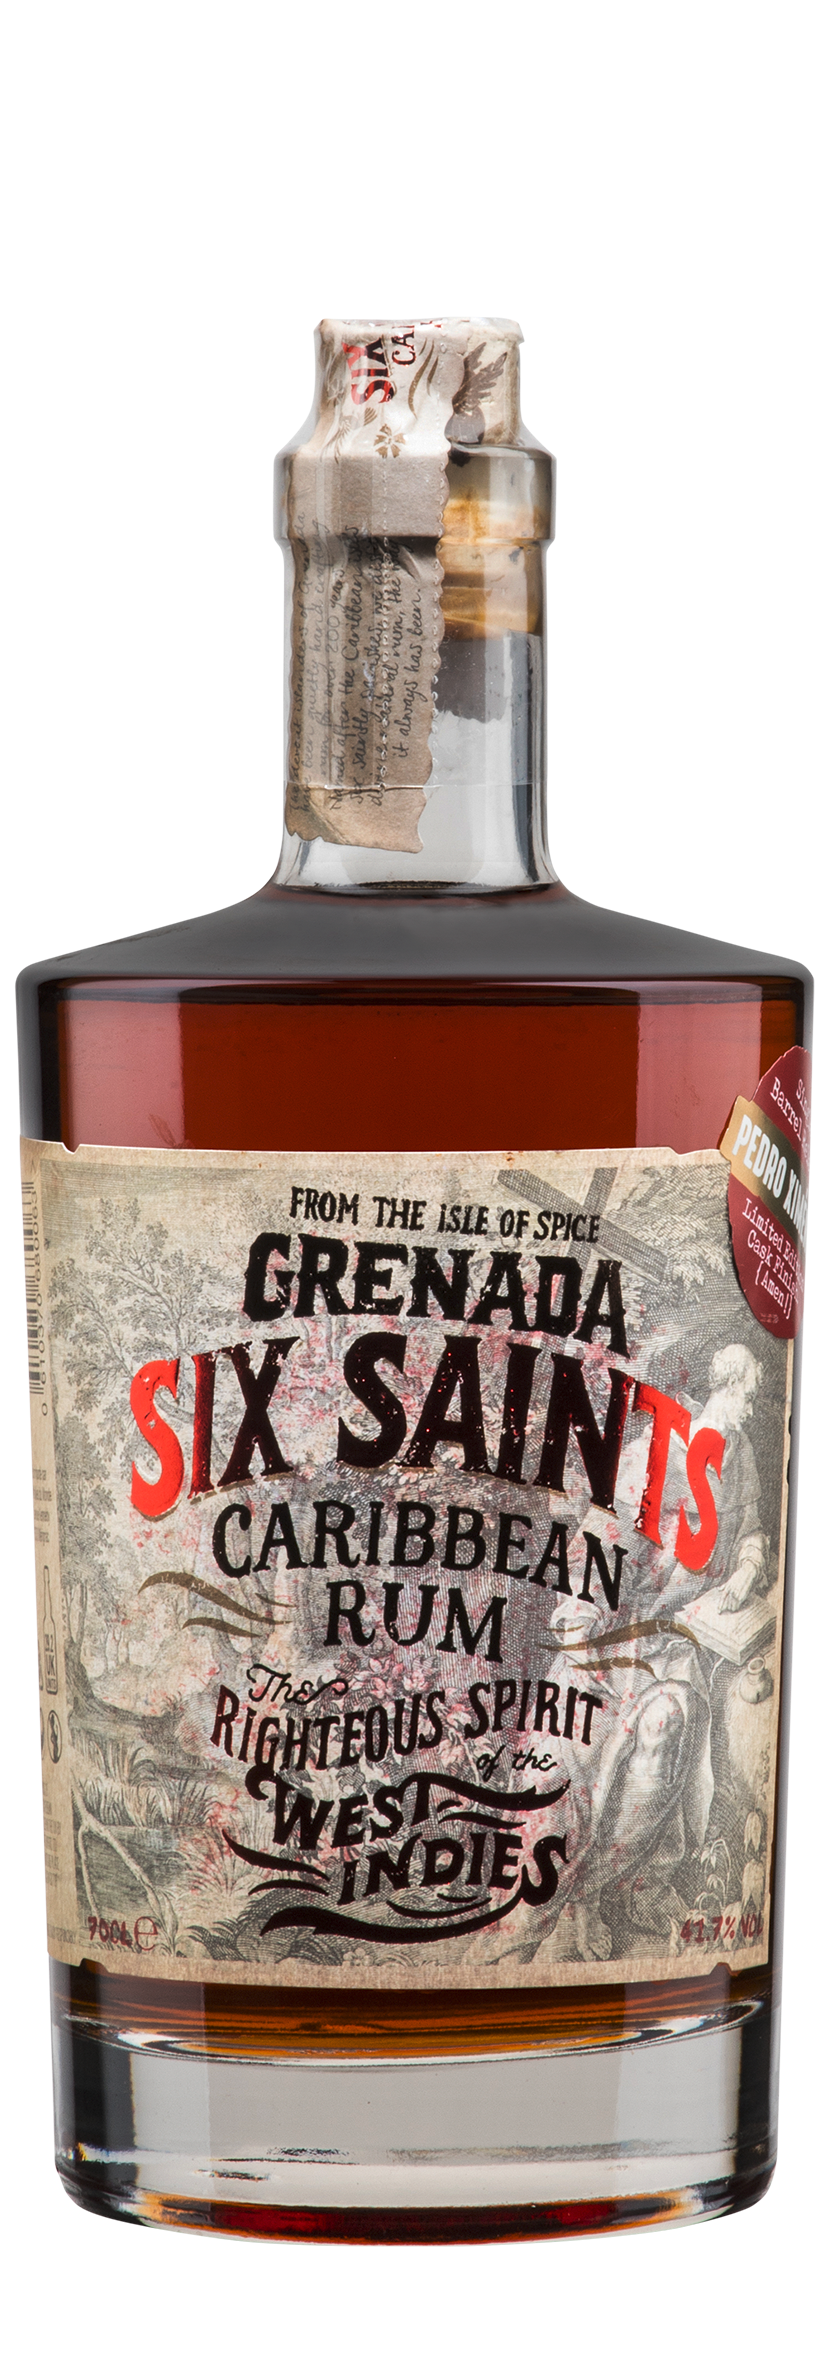 Grenada Caribbean Rum Oloroso Cask 0